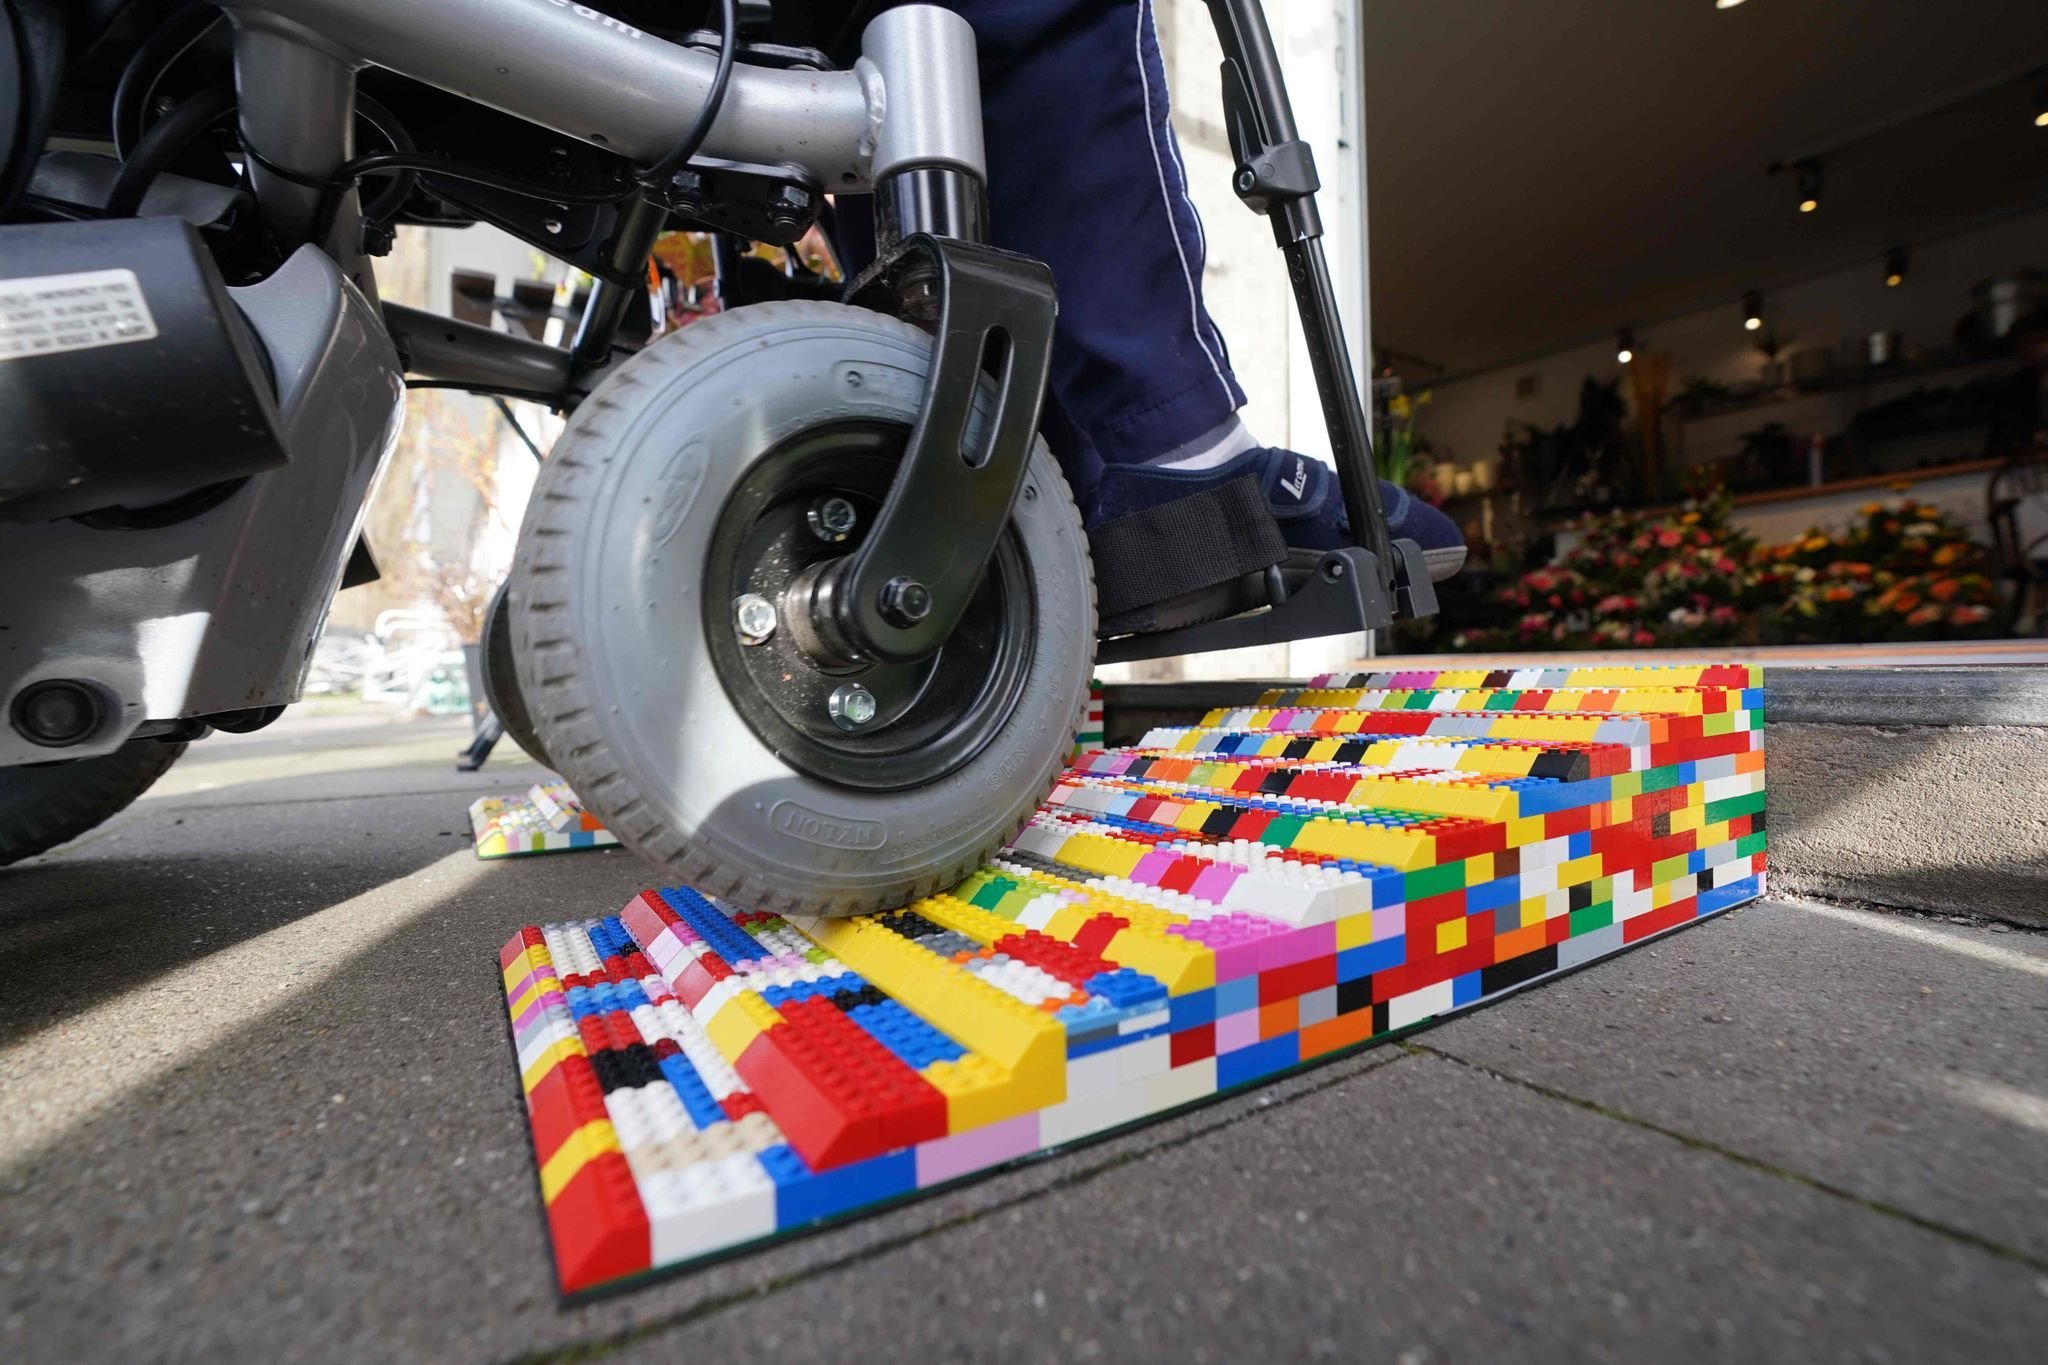 Lego–Rampe sorgt in Blumenladen für Barrierefreiheit